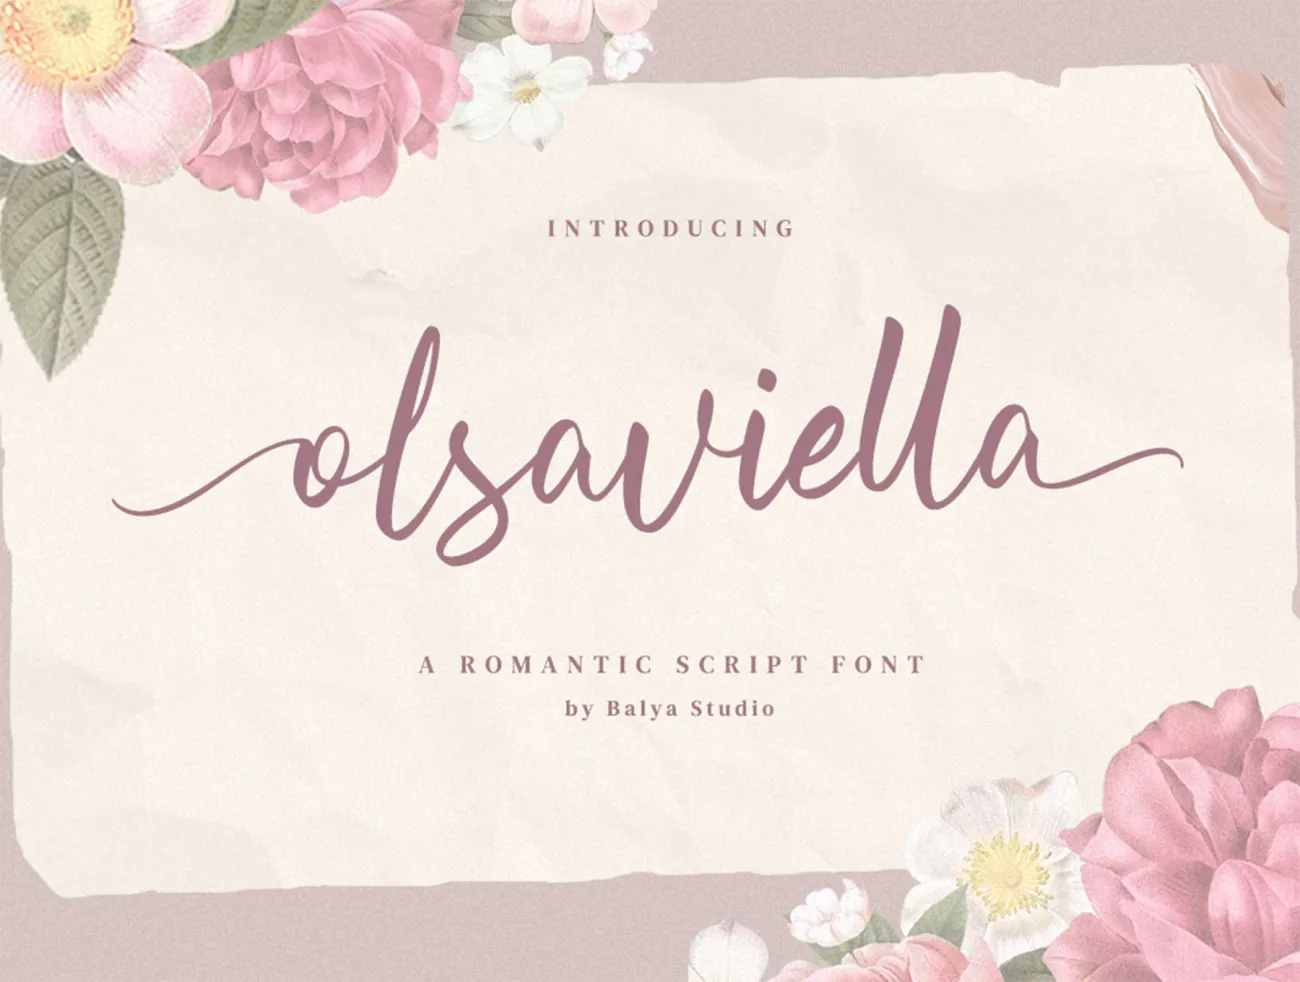 精美英文软笔签名手写字体 Olsaviella Signature Font插图1